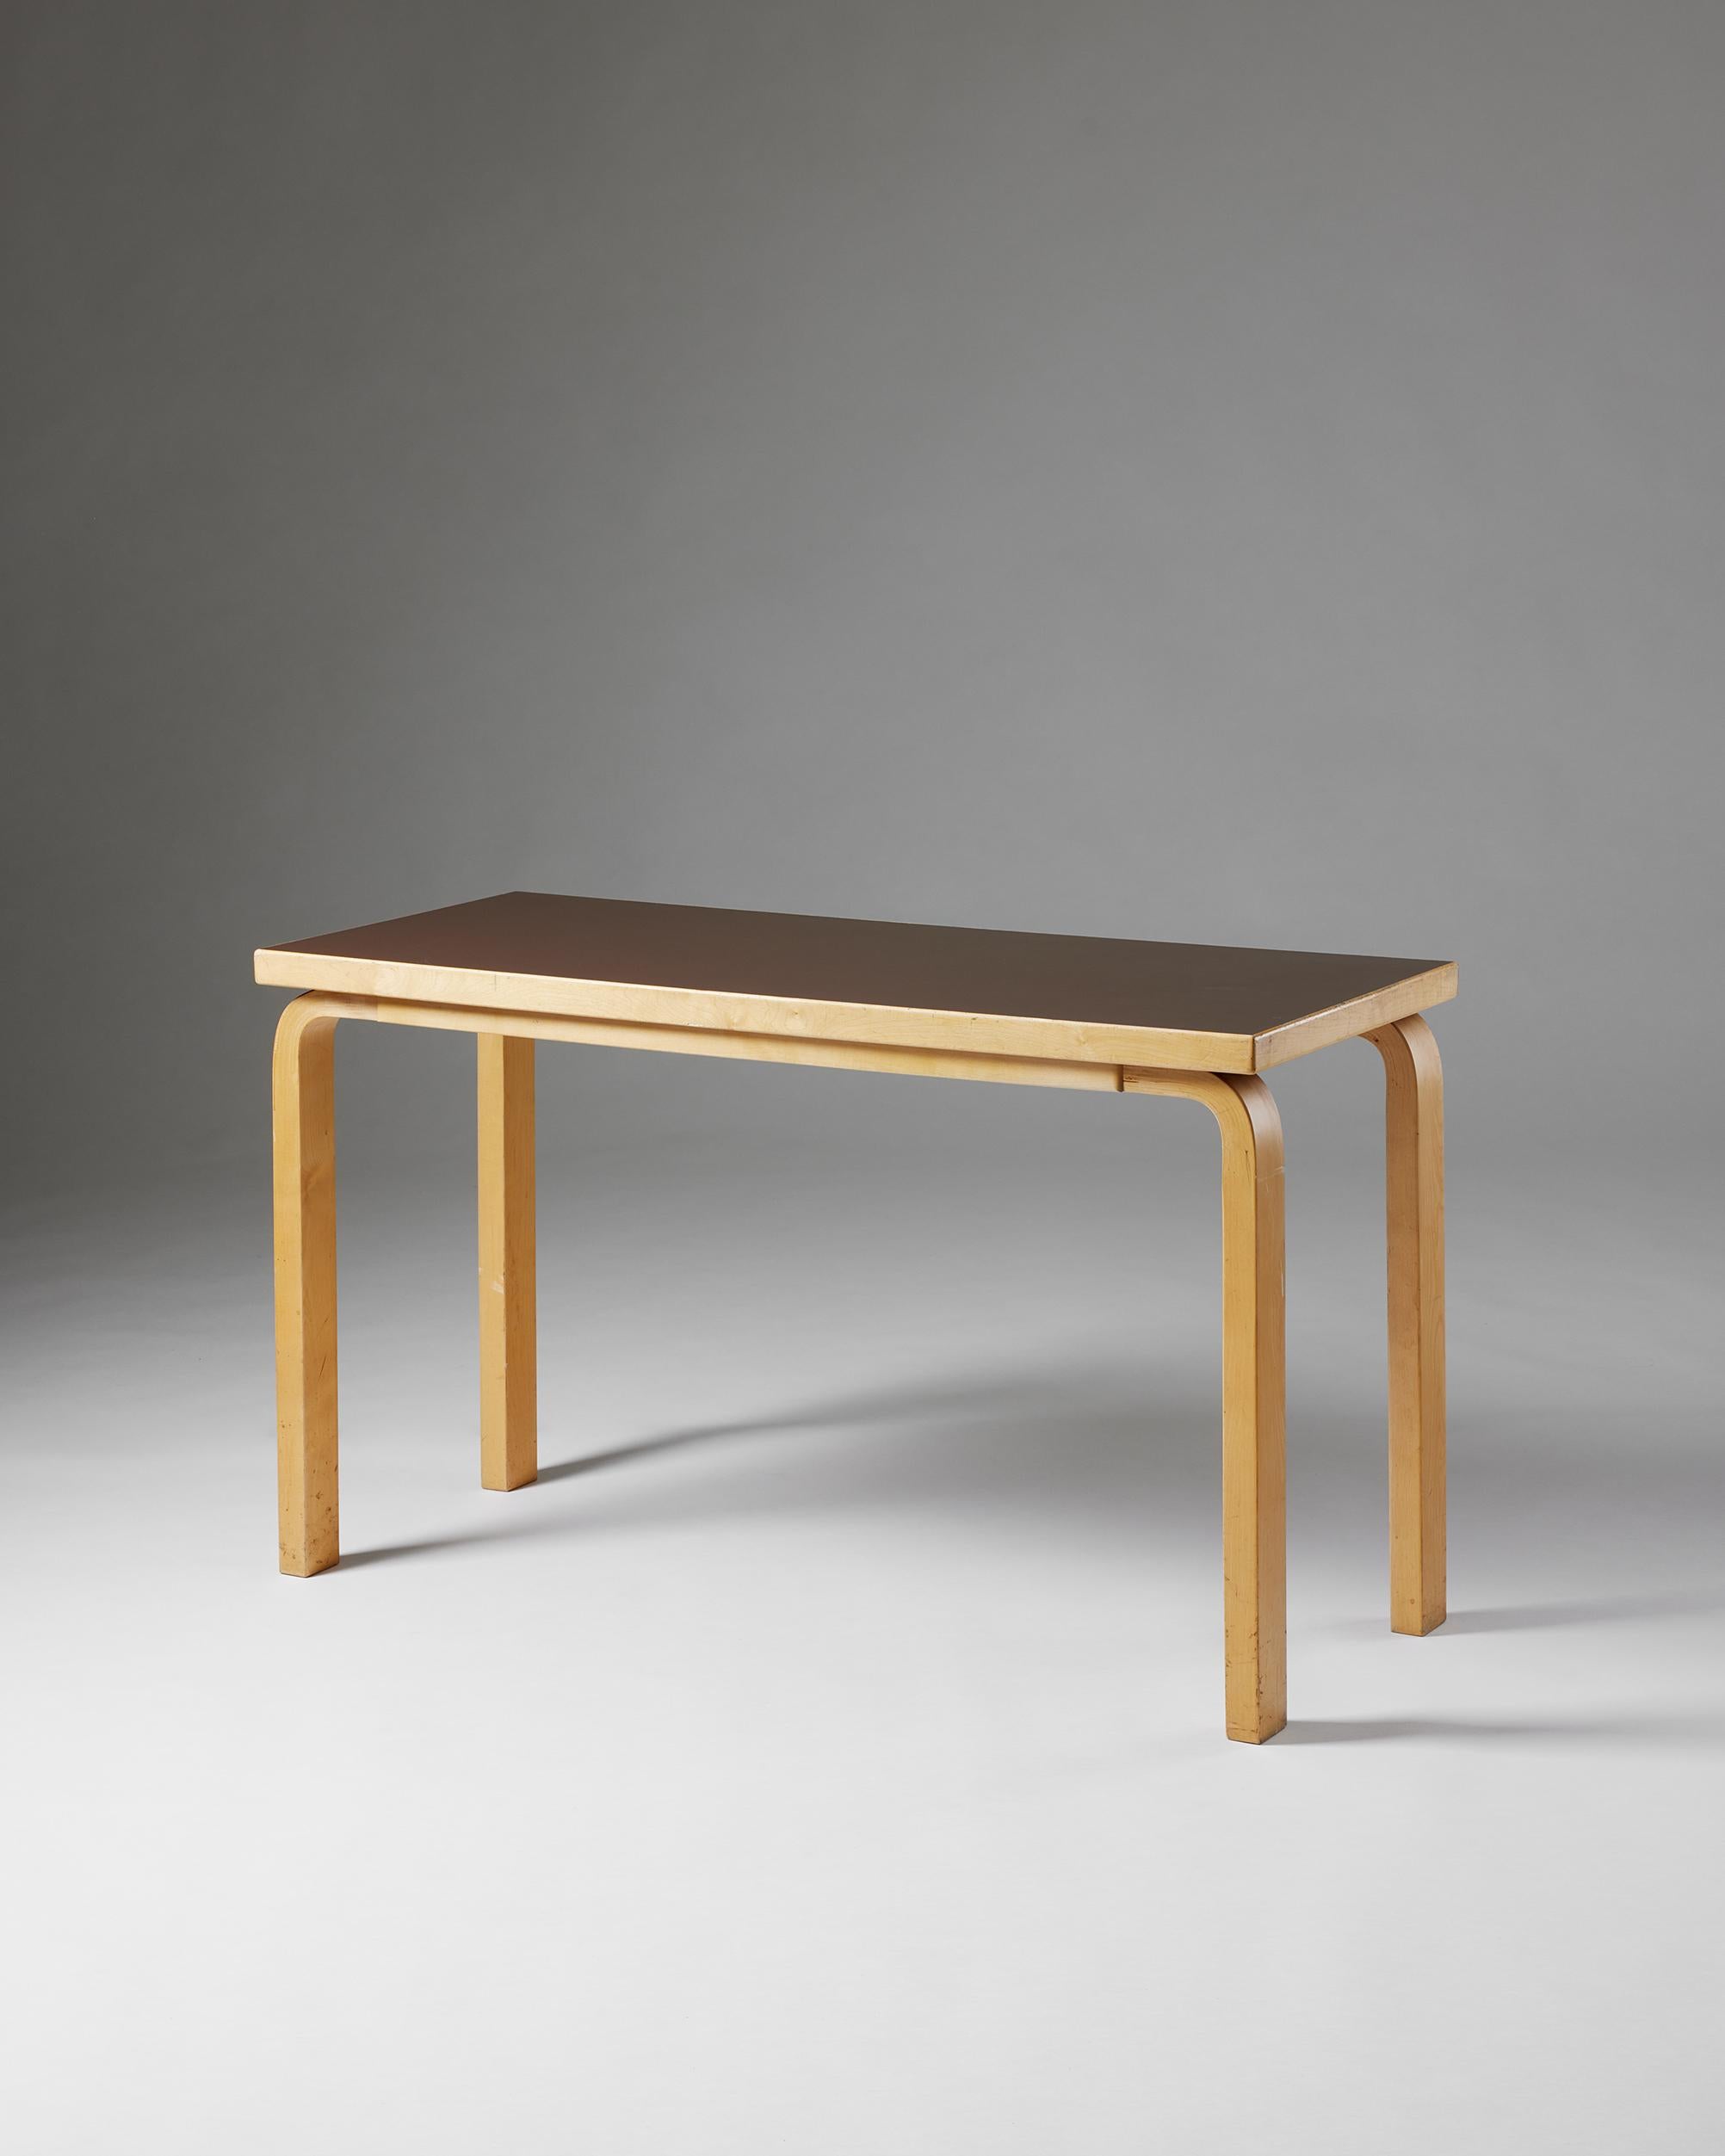 Table conçue par Alvar Aalto pour Artek,
Finlande, années 1970.

Bouleau laqué et stratifié.

Alvar Aalto était un architecte et designer finlandais. Son travail comprend l'architecture, le mobilier, l'éclairage et la verrerie, ainsi que des